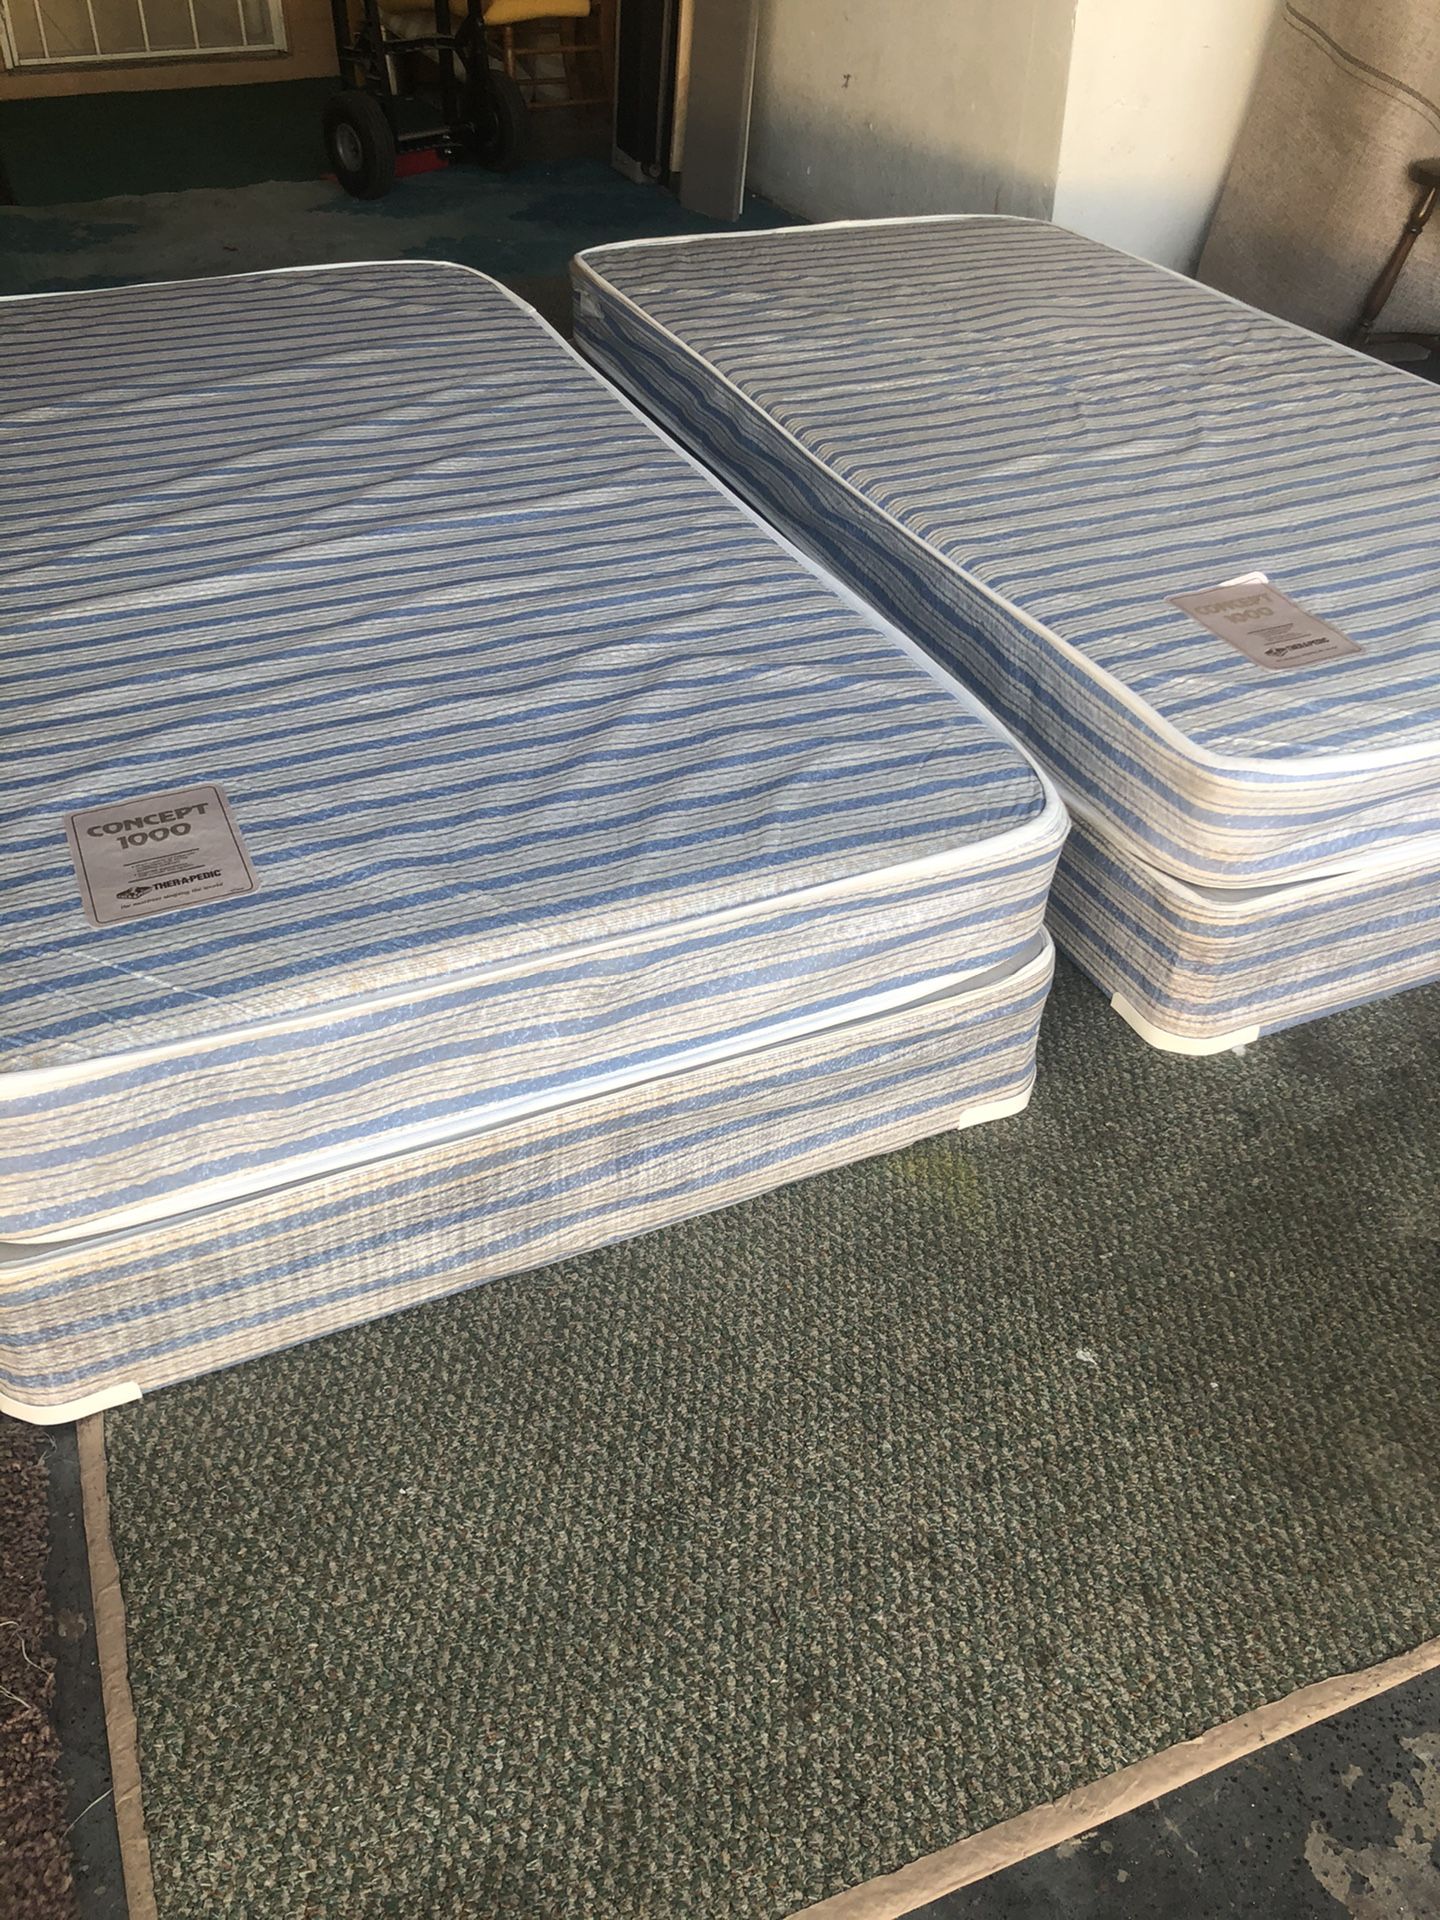 2 twin mattress set. Pending